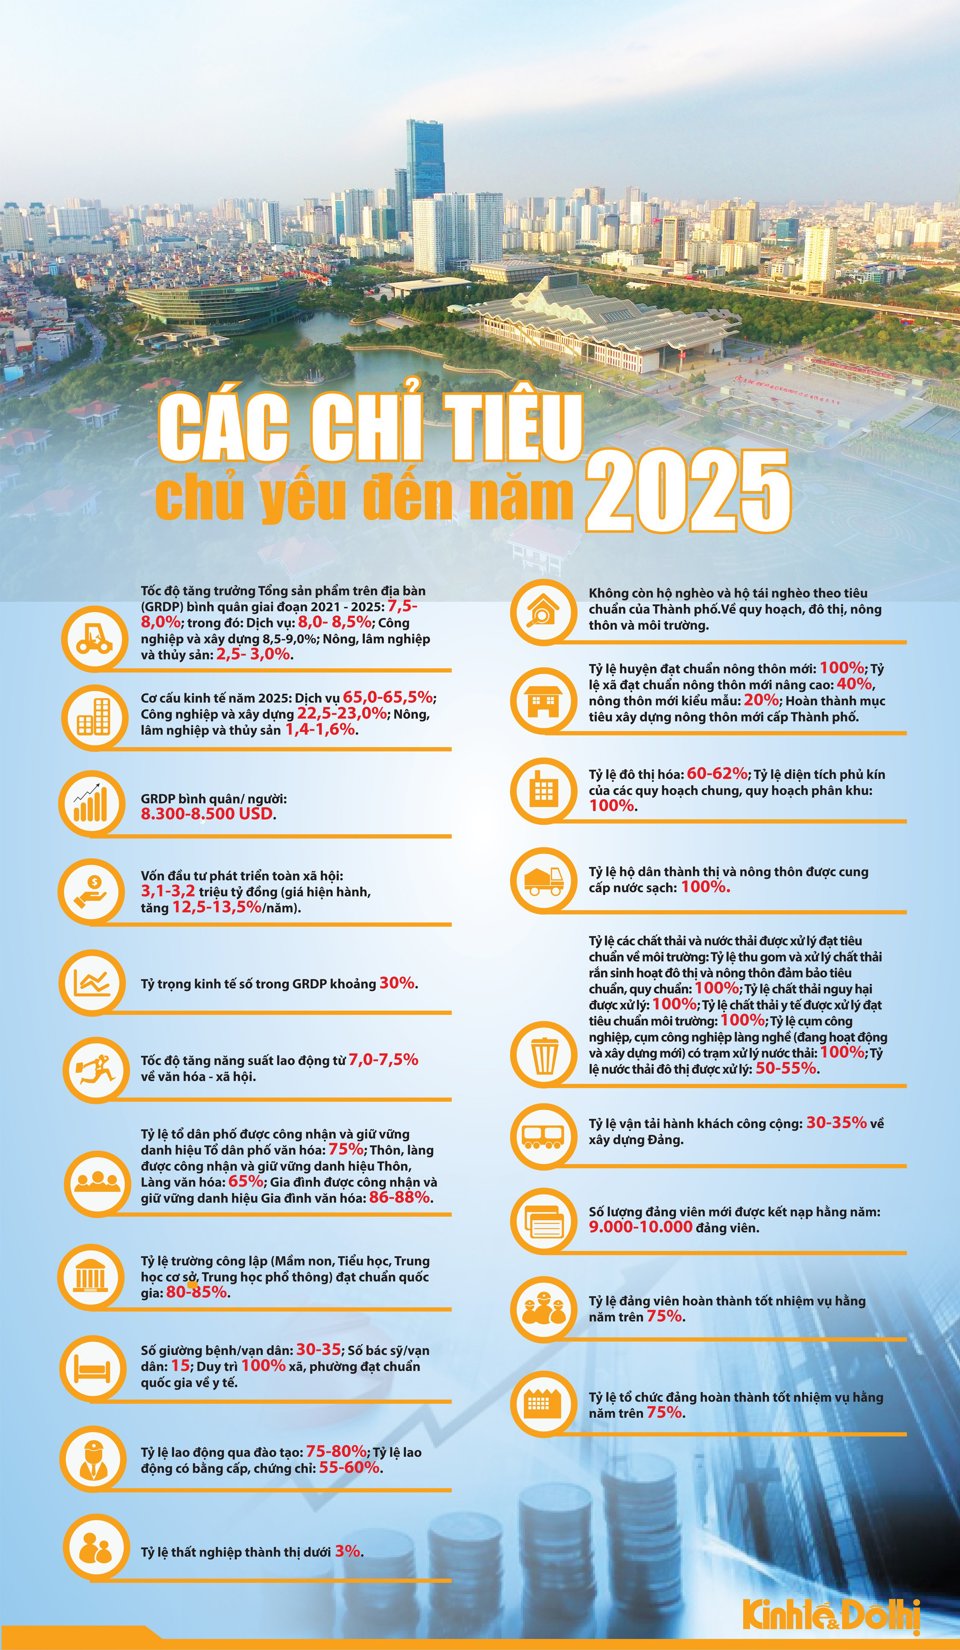 [Infographic] Các chỉ tiêu chủ yếu của Hà Nội đến năm 2025 - Ảnh 1